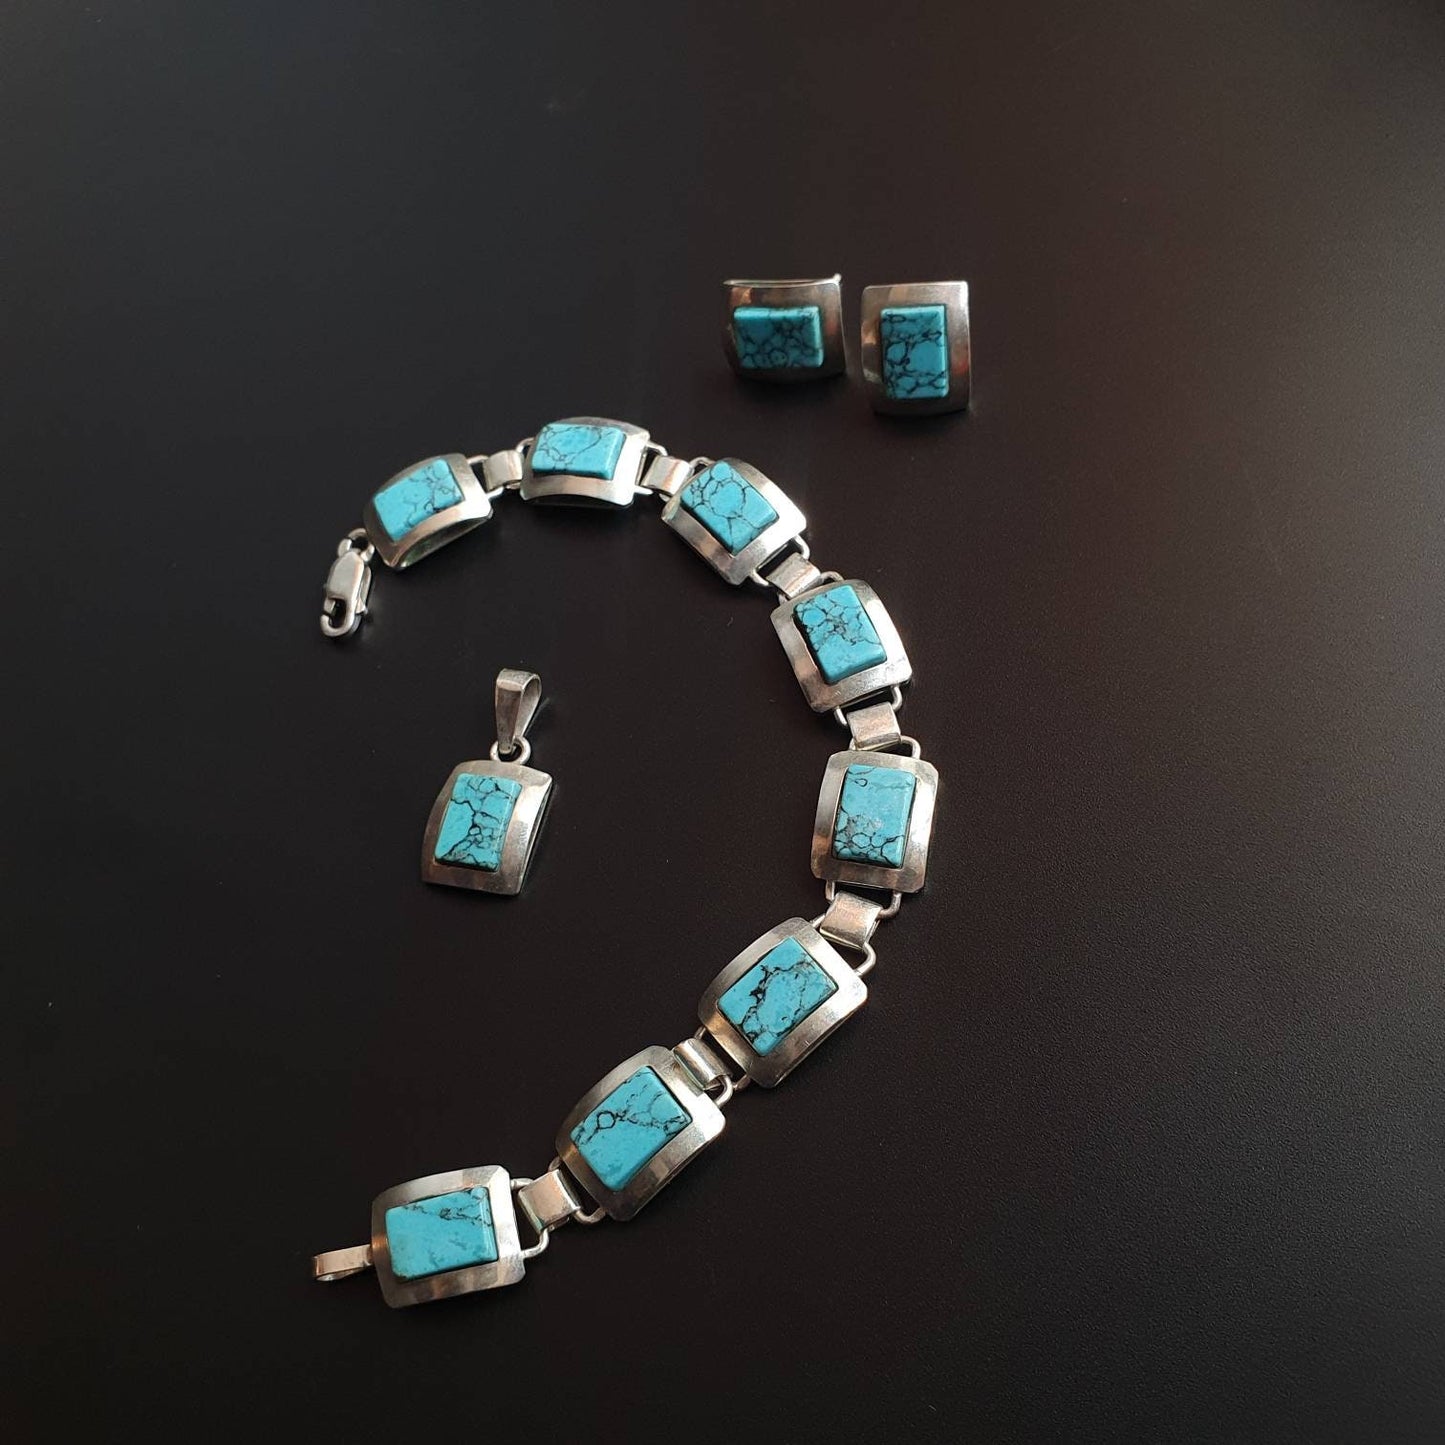 Turquoise earrings, pendant, bracelet, silver jewellery, sterling silver earrings, necklace, gifts, statement bracelet, silver jewellery